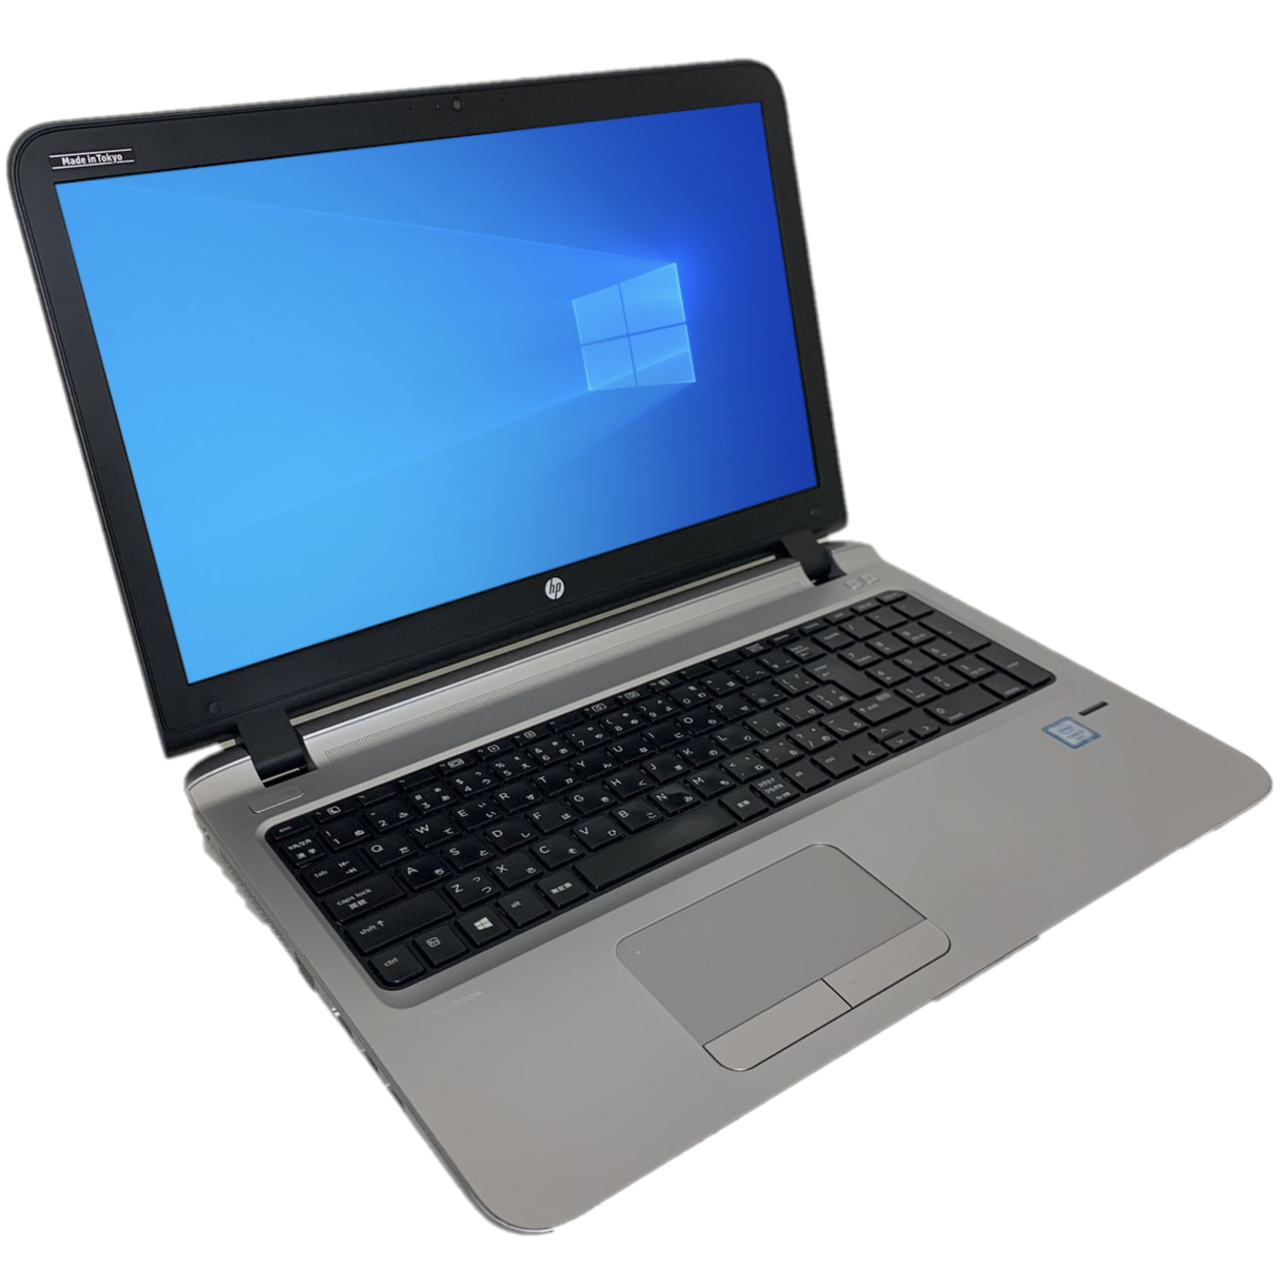 【HP ProBook 450G3】 i5-6200U メモリ8GB SSD128GB カメラあり [Cランク] bluetooth 15.6インチ ノートパソコン 中古パソコン専門店 PCスマイル